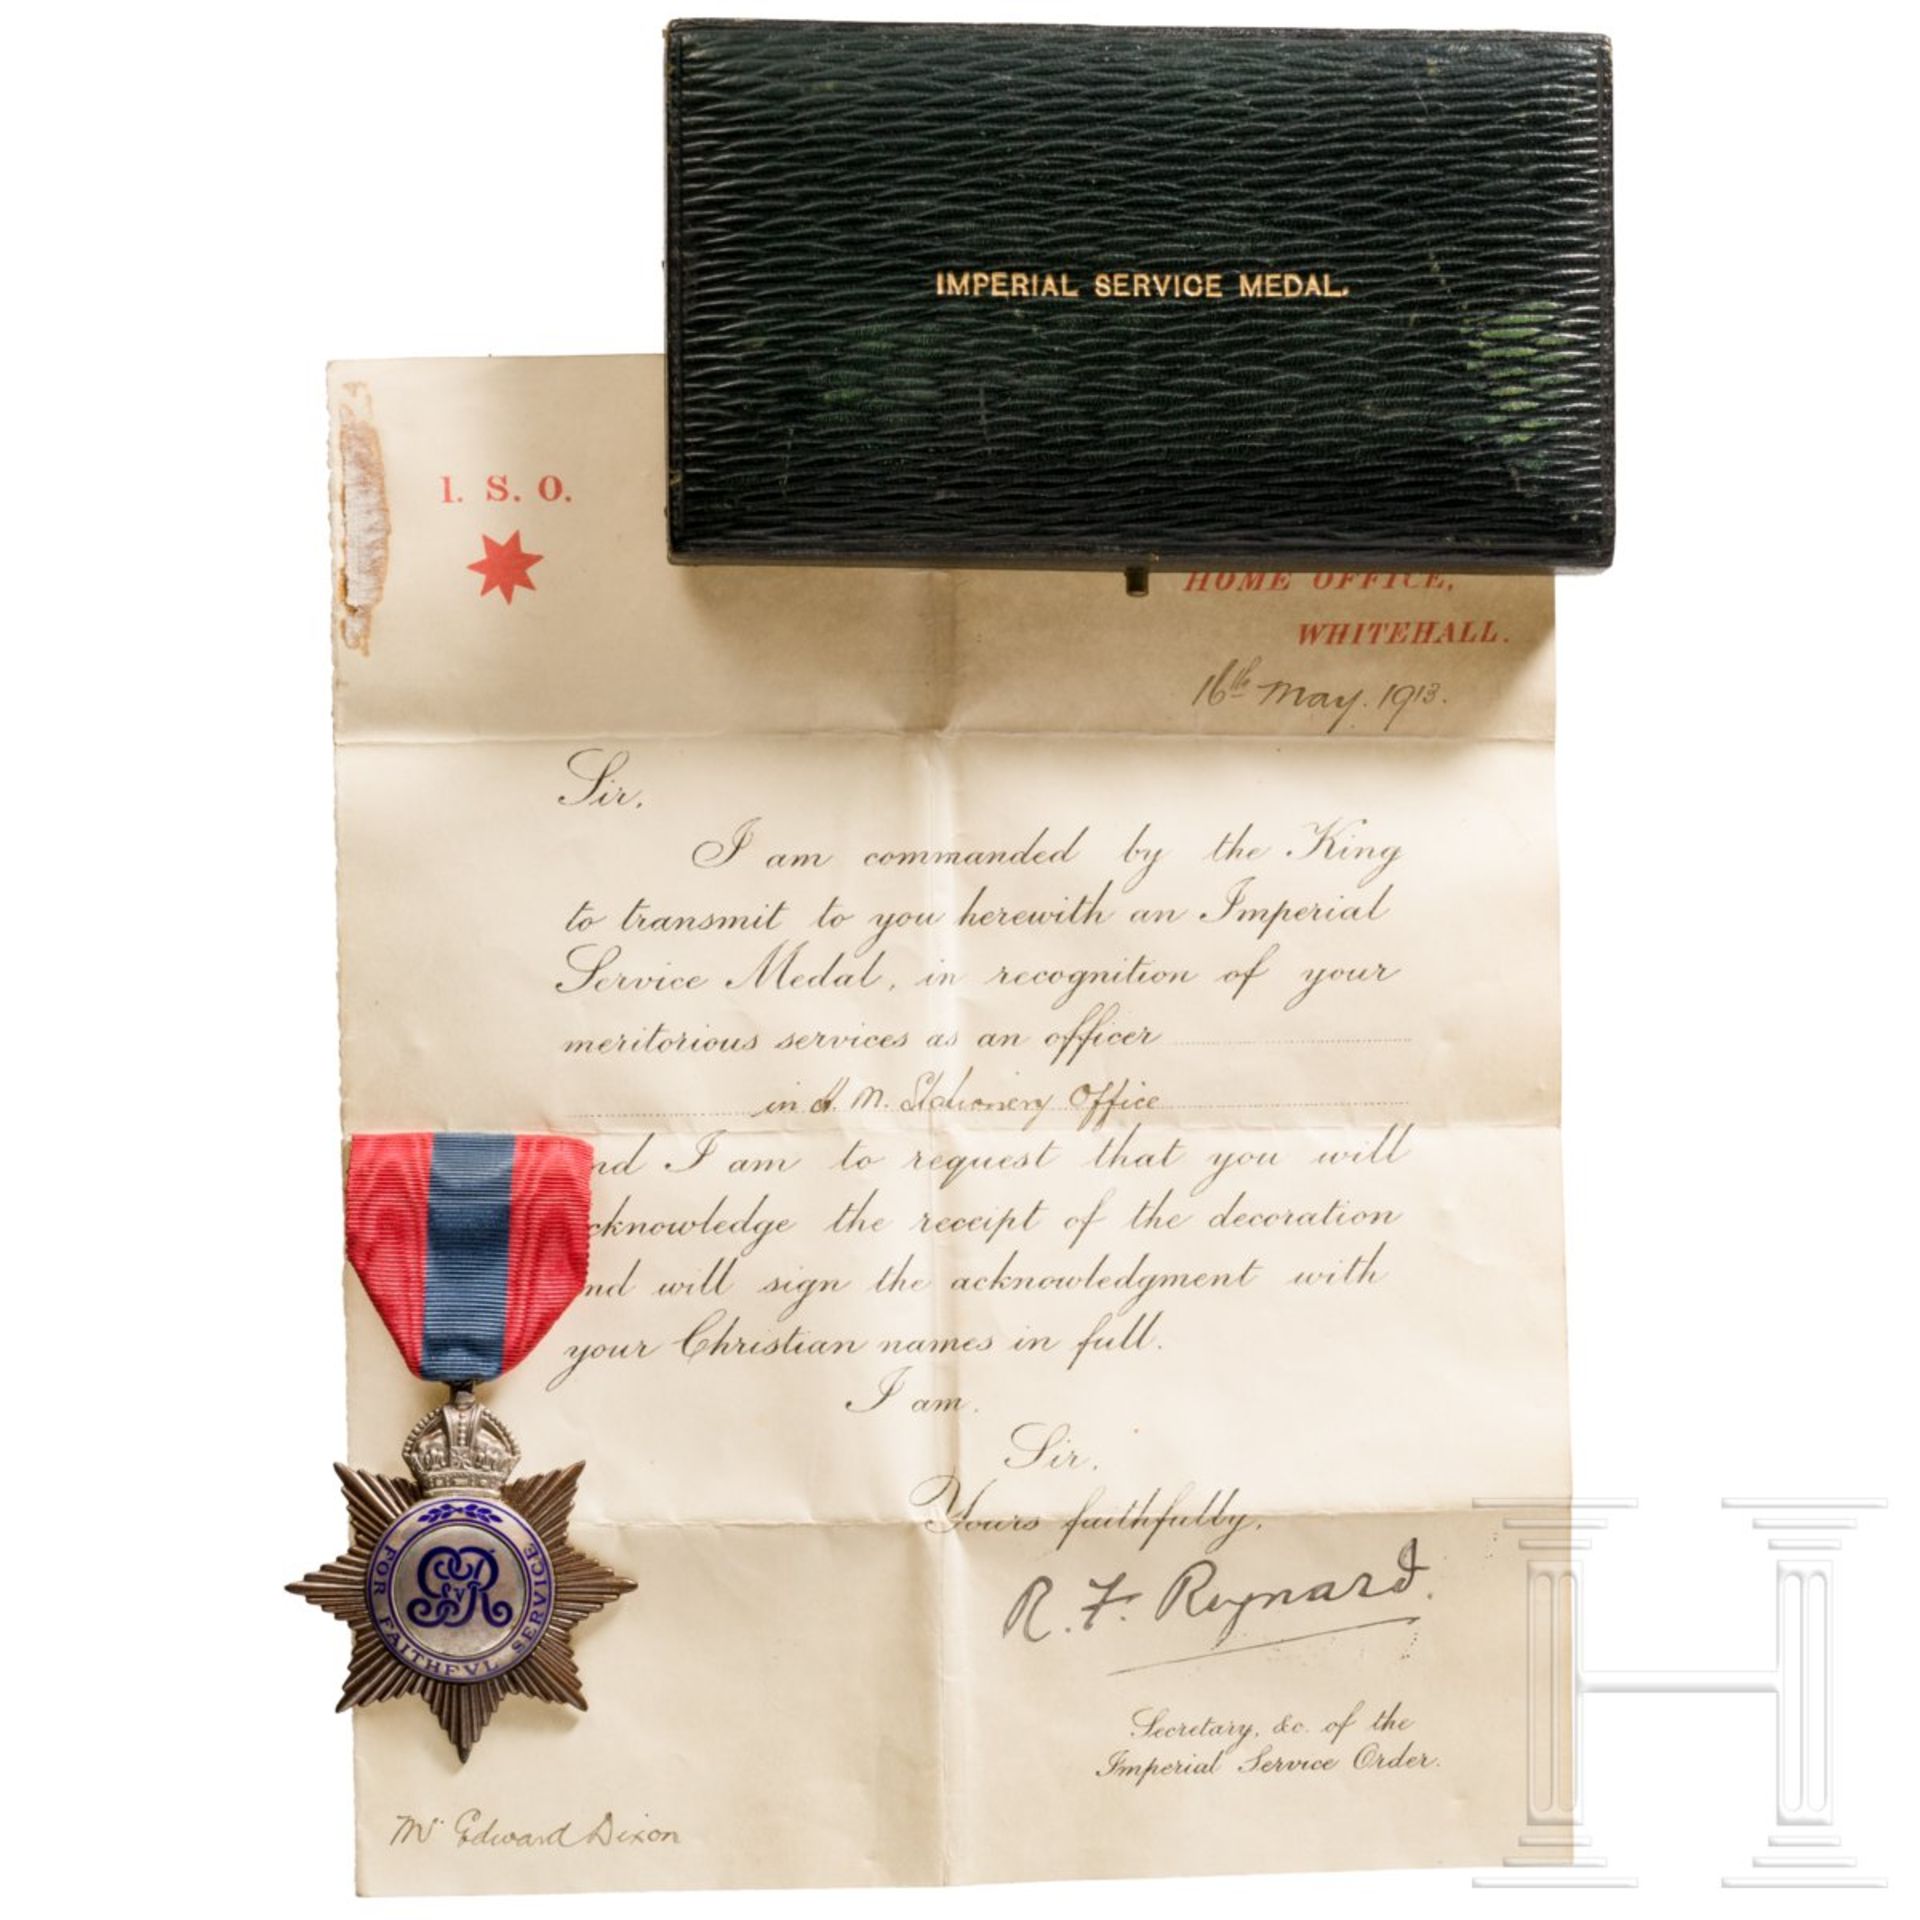 Großbritannien - Imperial Service Medal mit Urkunde, datiert 1913